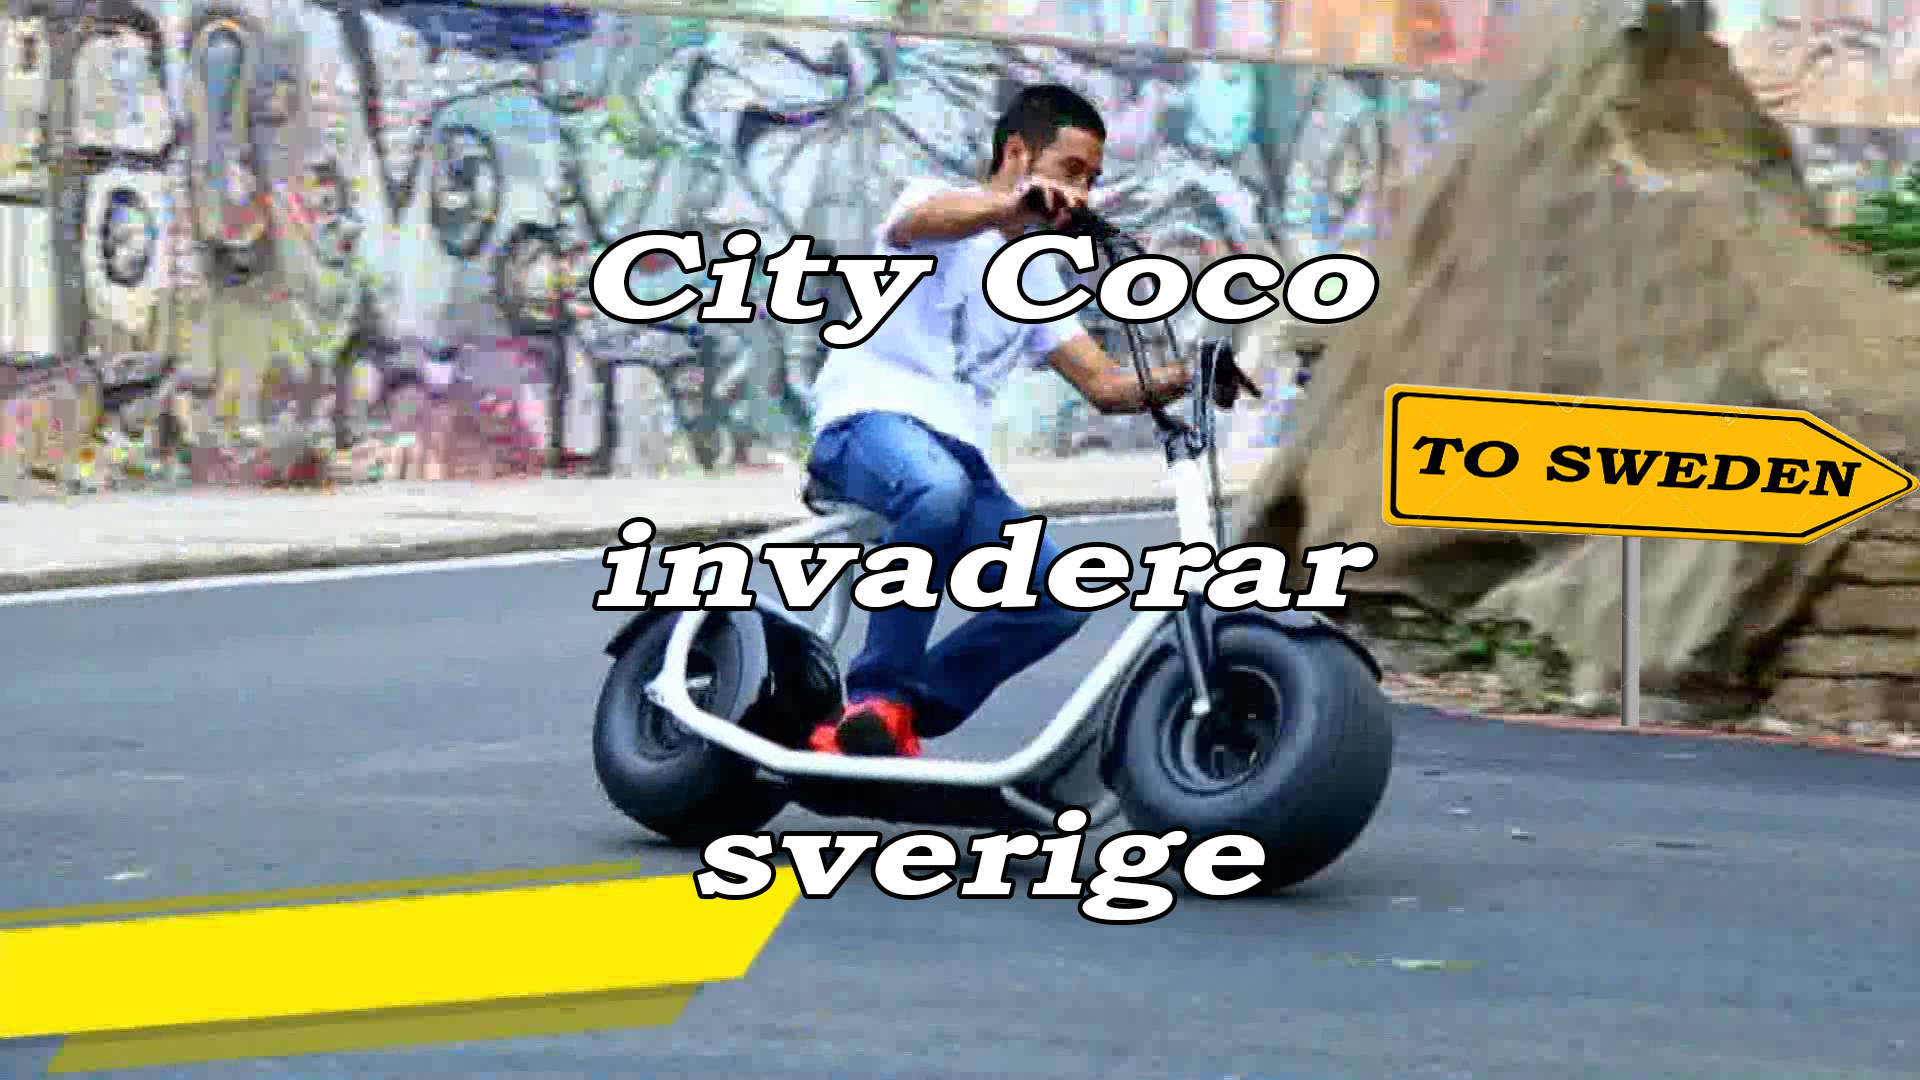 City Coco invaderar sverige!